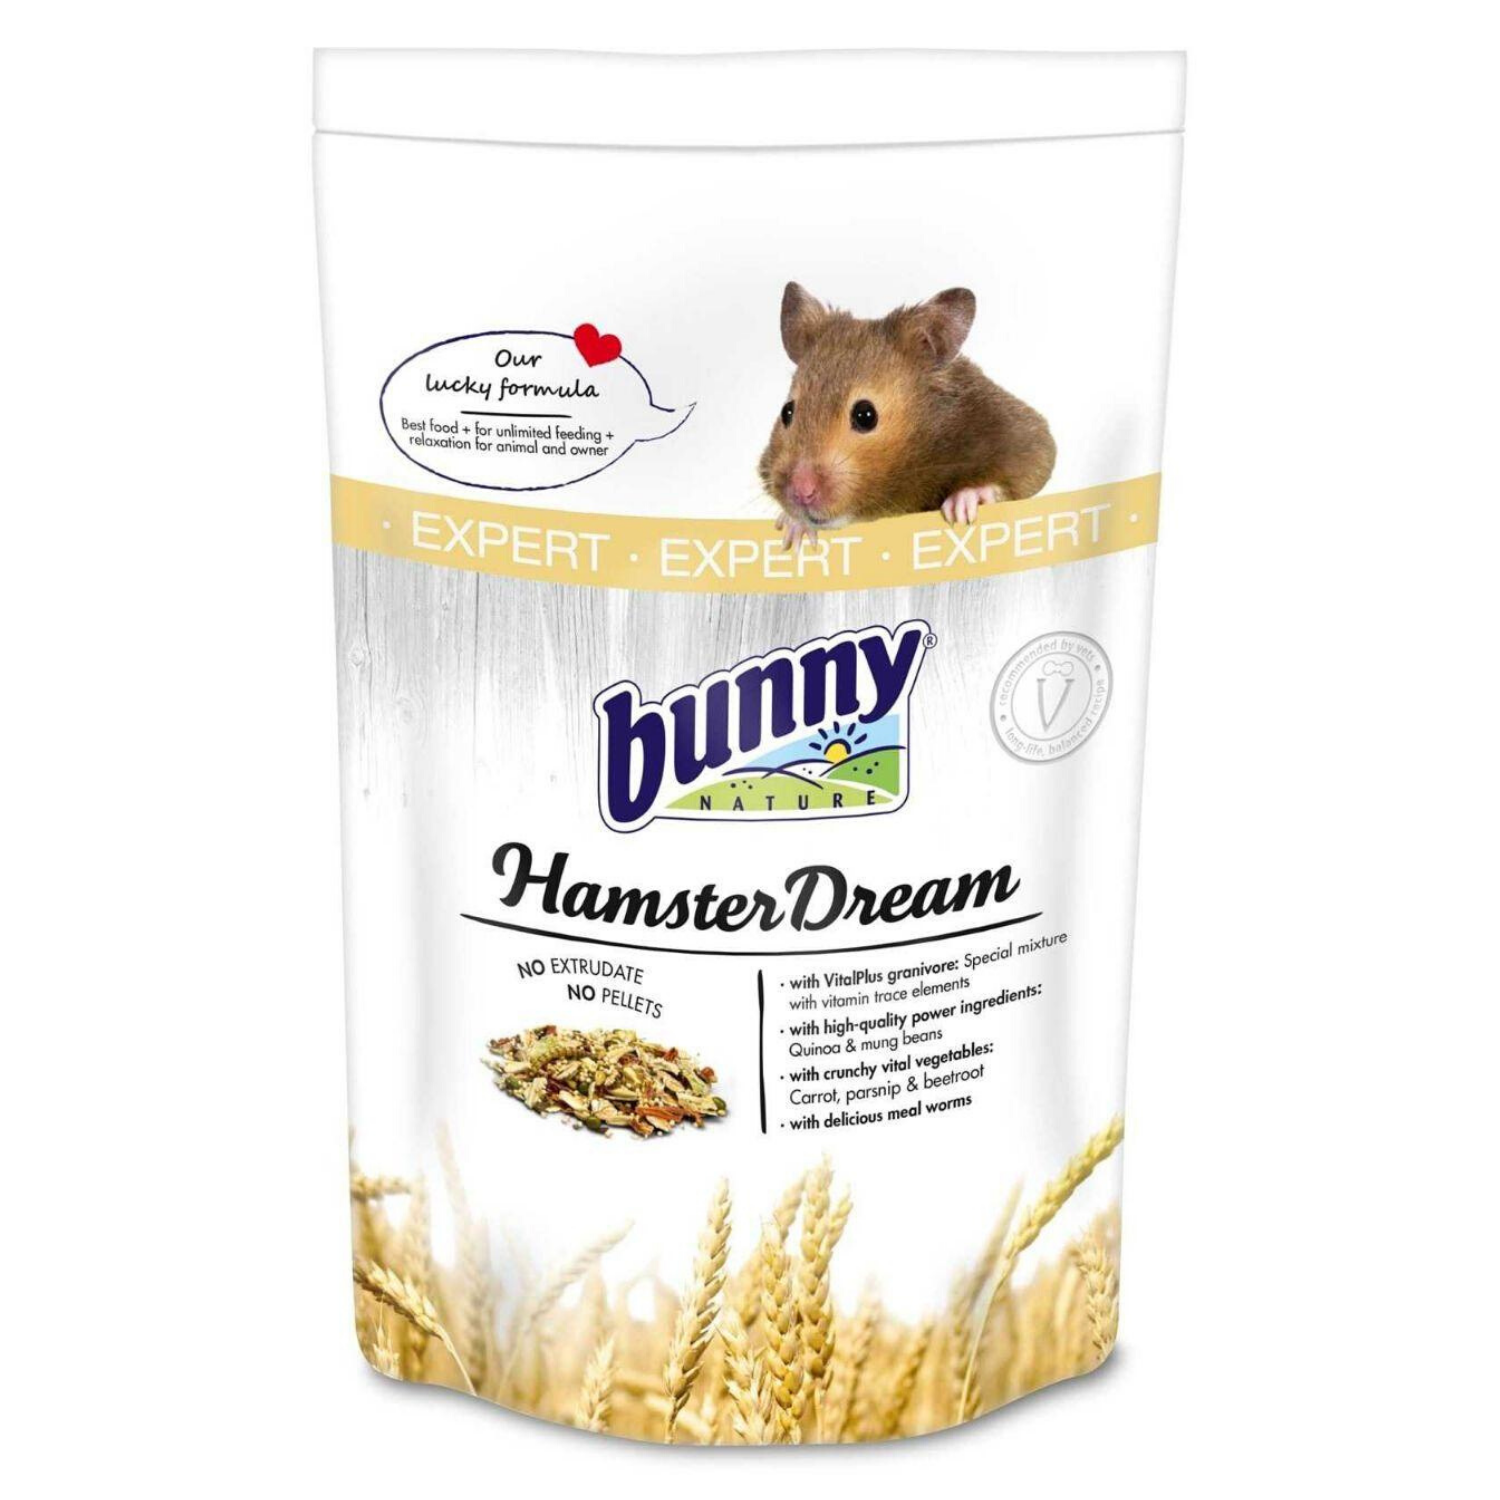 Bunny Nature Hamster Dream Expert - 500g / 3.2kg